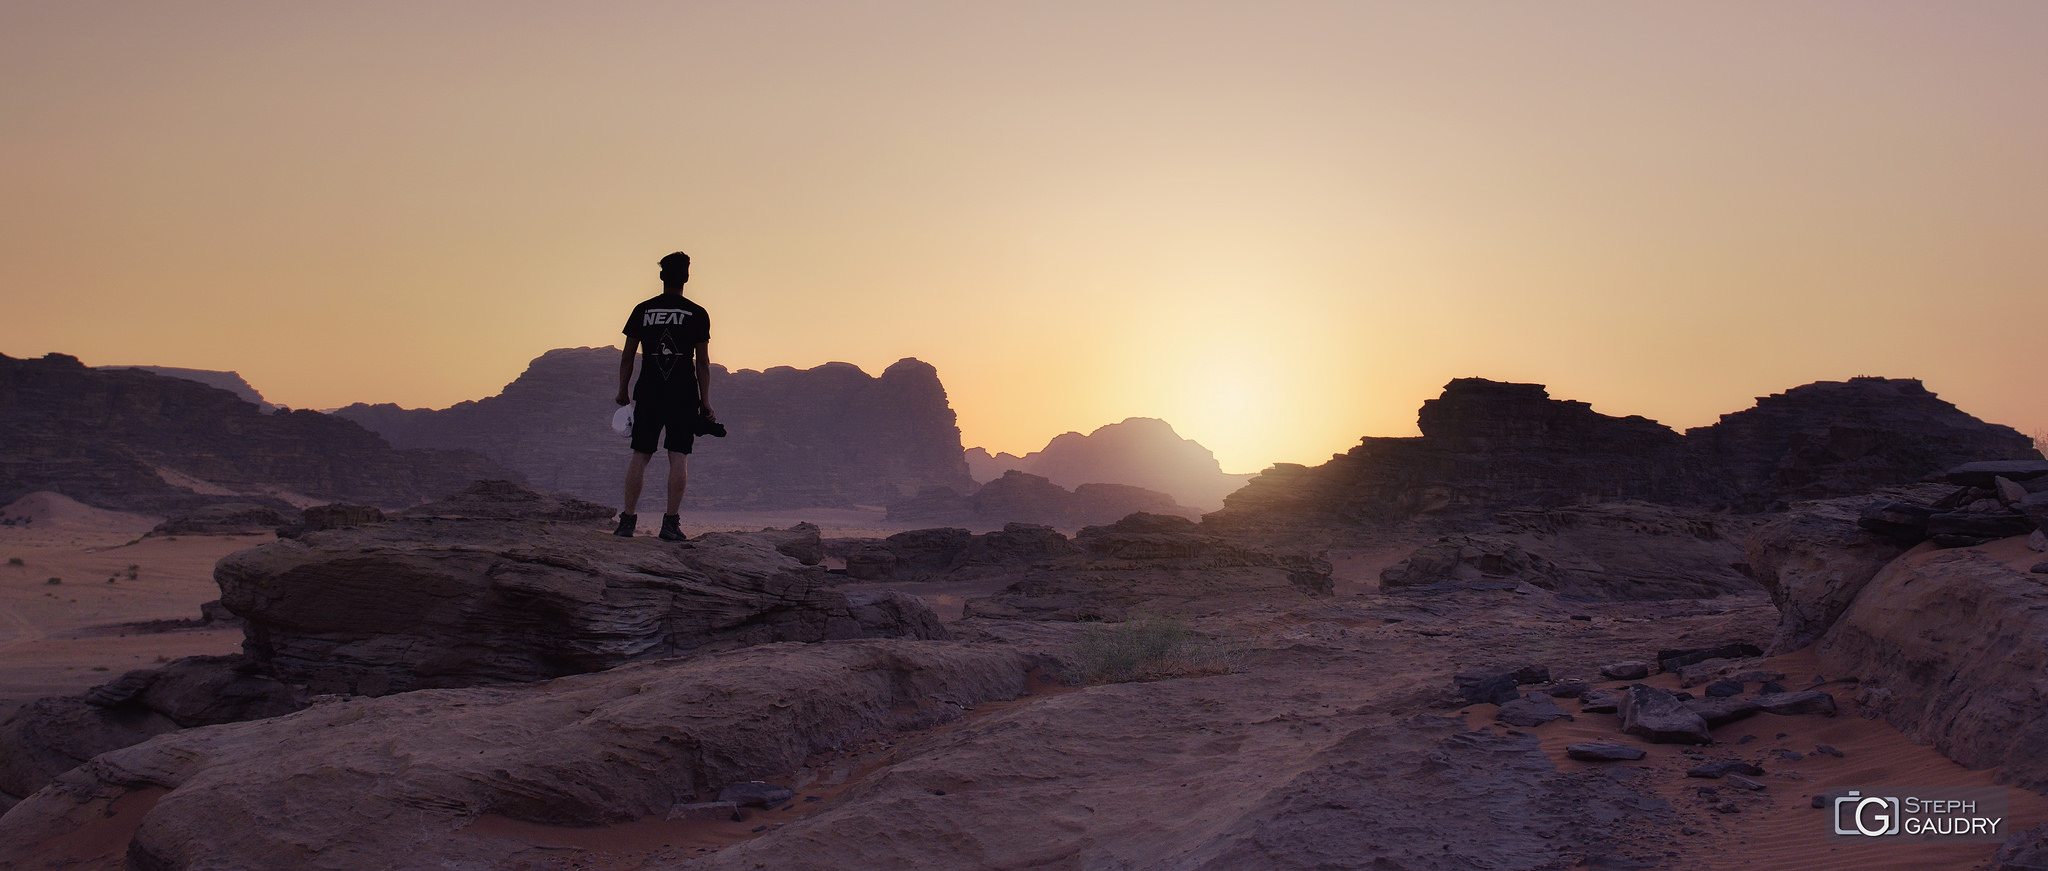 Wadi-Rum, sunset in the desert - my son Tom [Click to start slideshow]